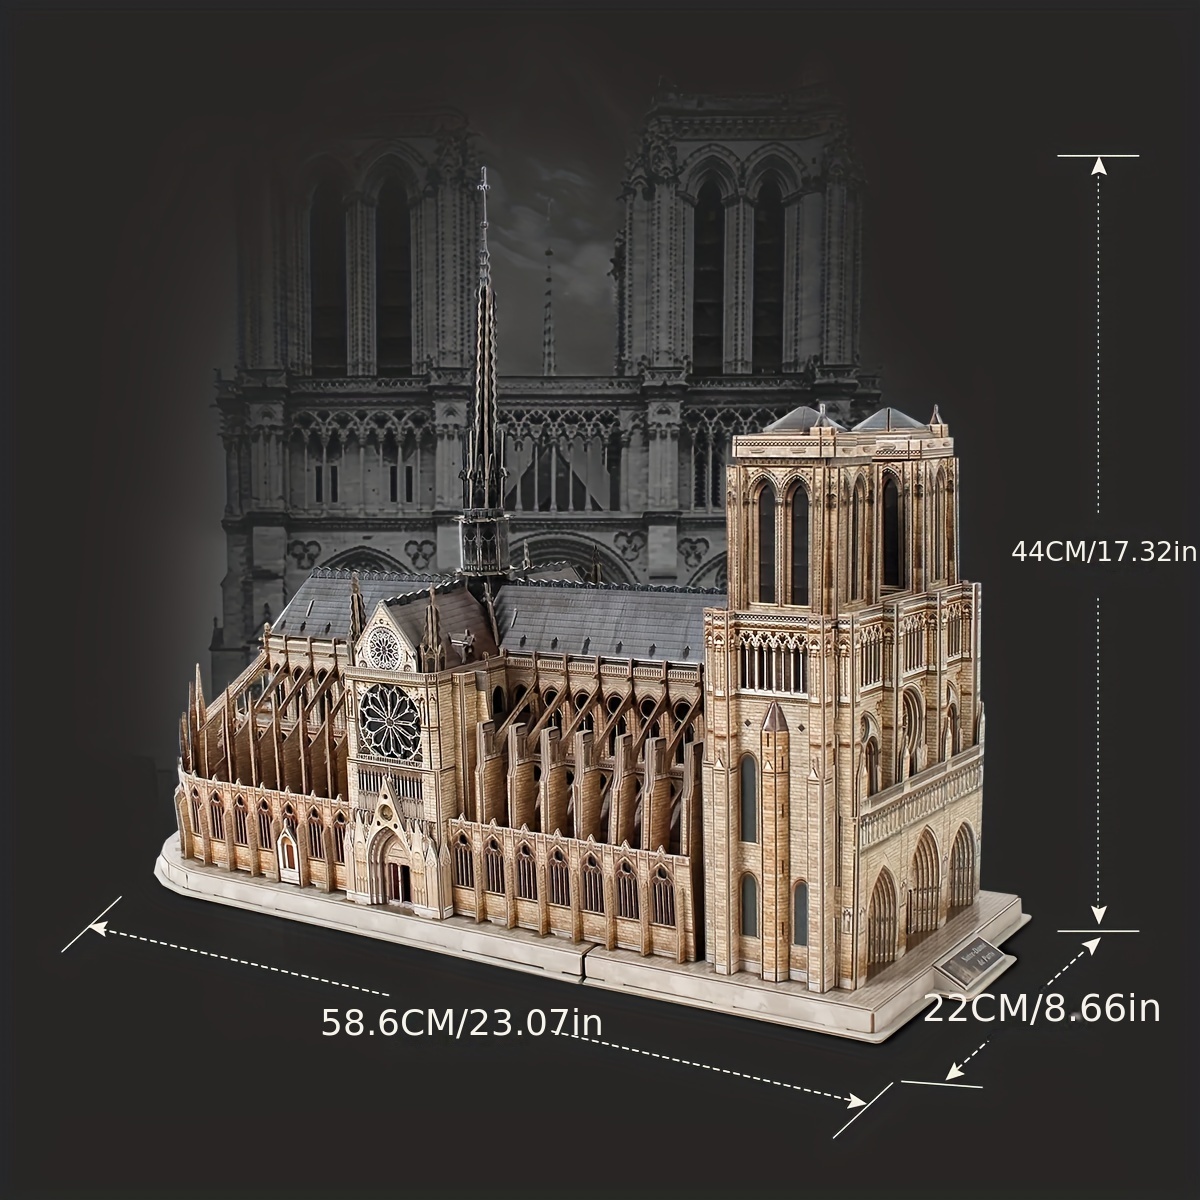 3D Puzzle – Notre Dame